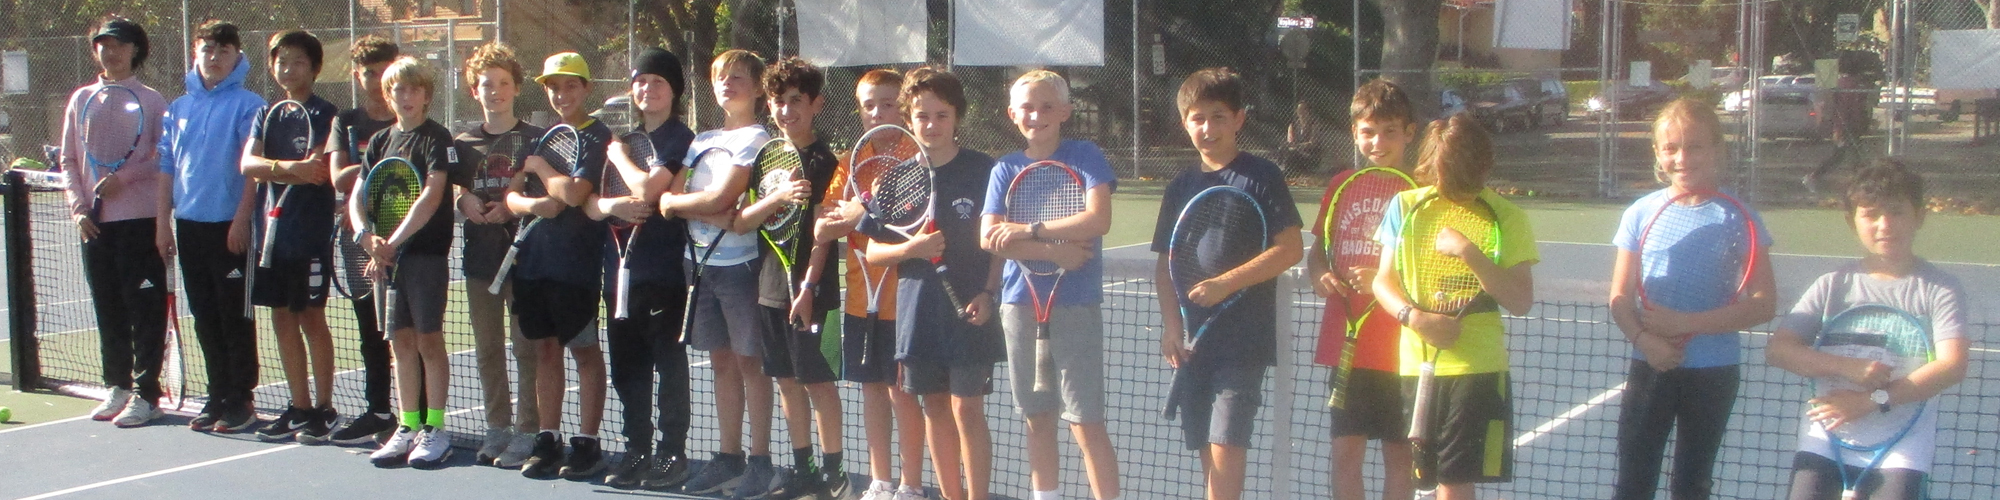 Kids on Tennis Court